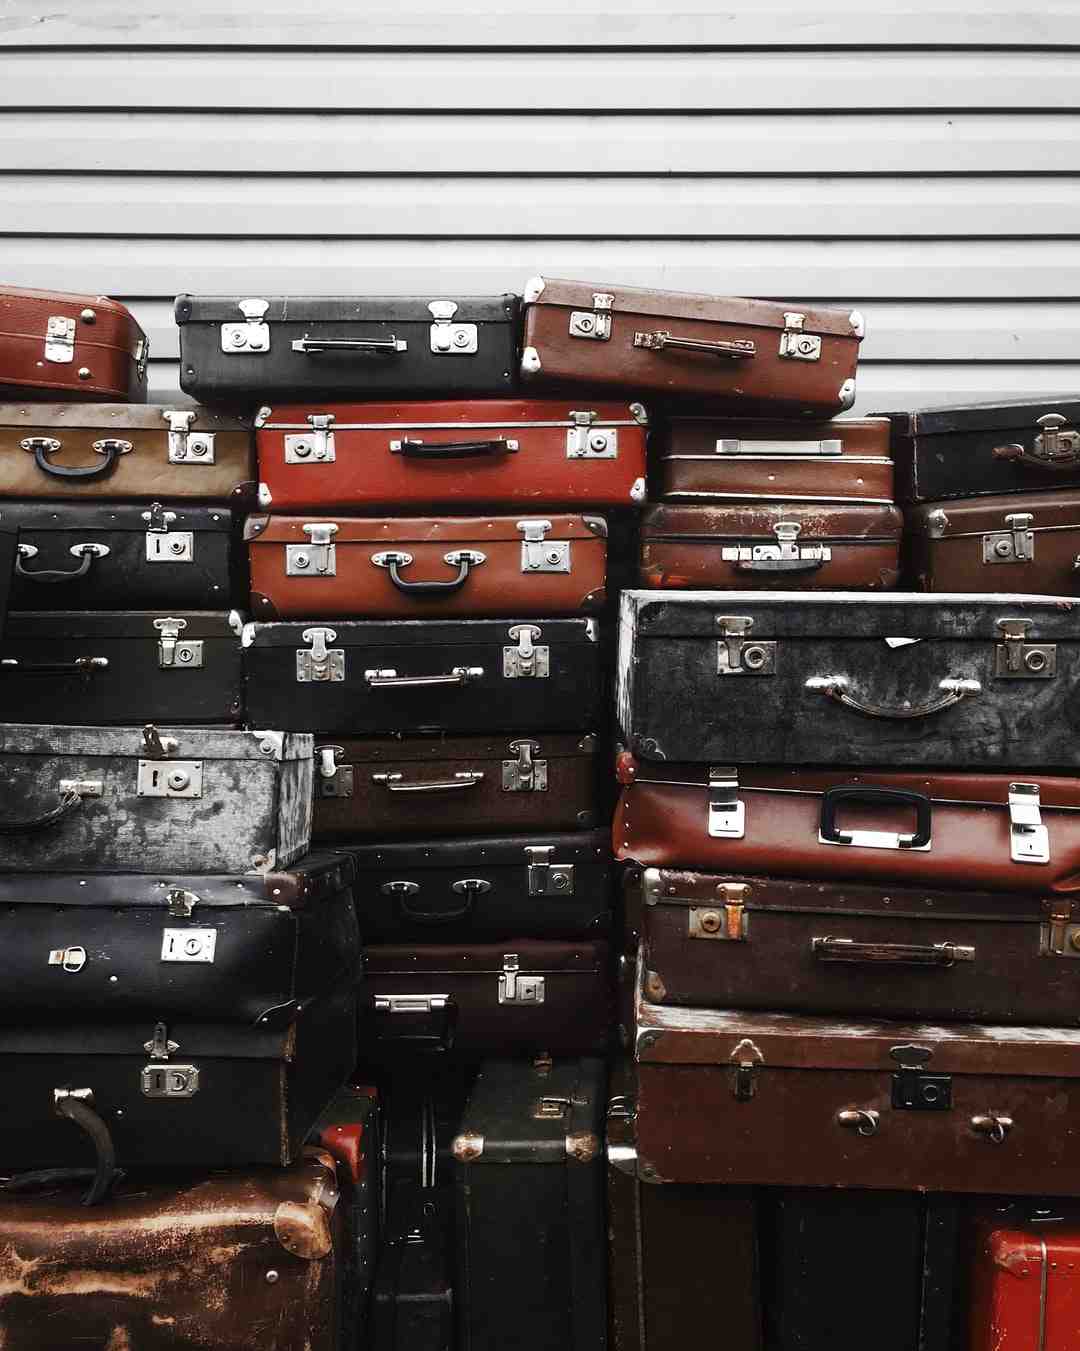 Quelles sont les bonnes marques de valises ?